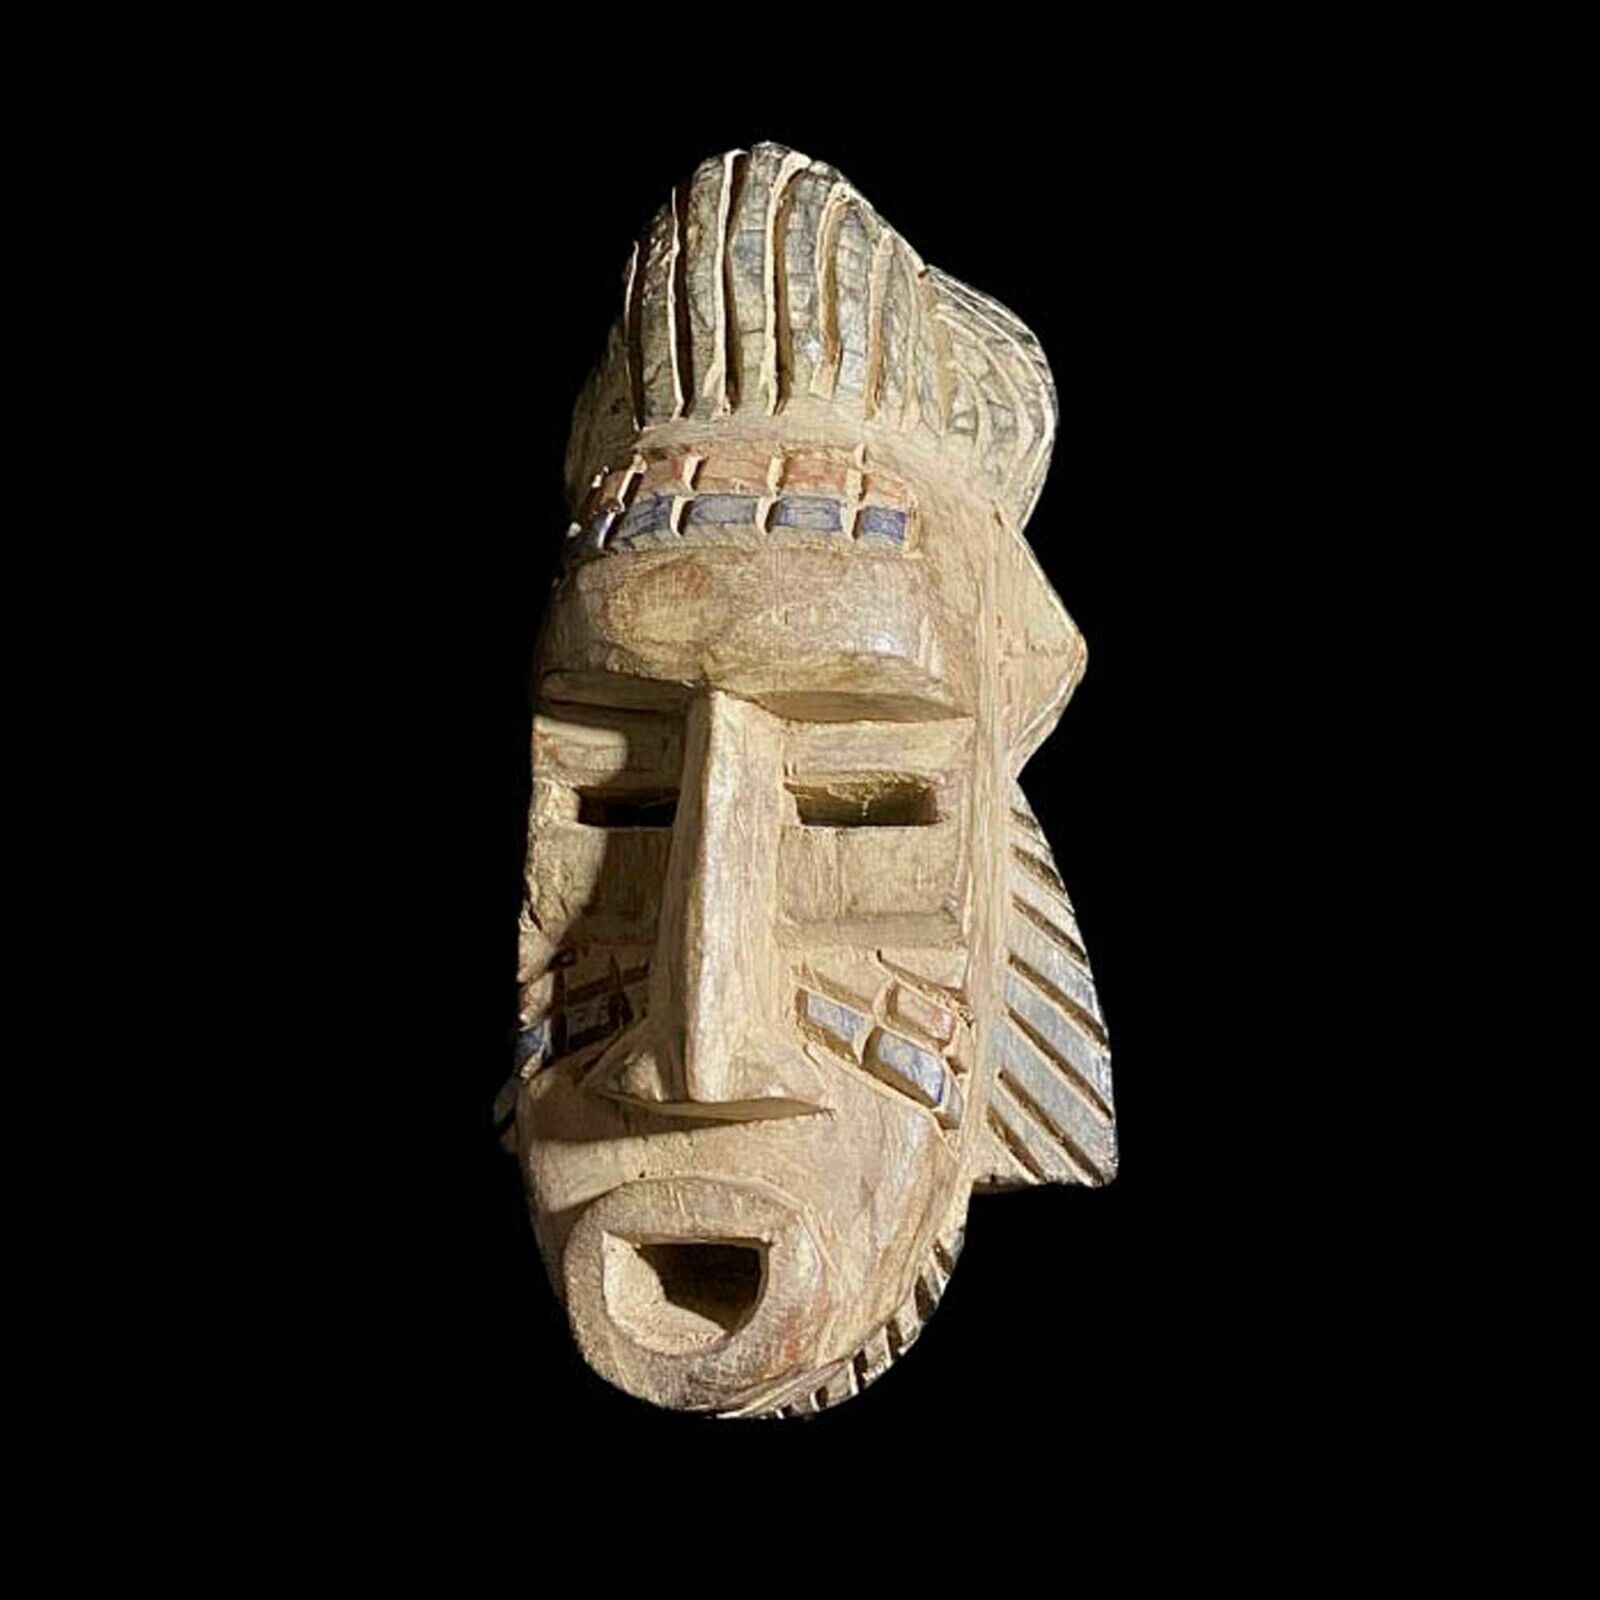 African Masks African Art Wall Decor Wooden Masks Handmade Guru-7425